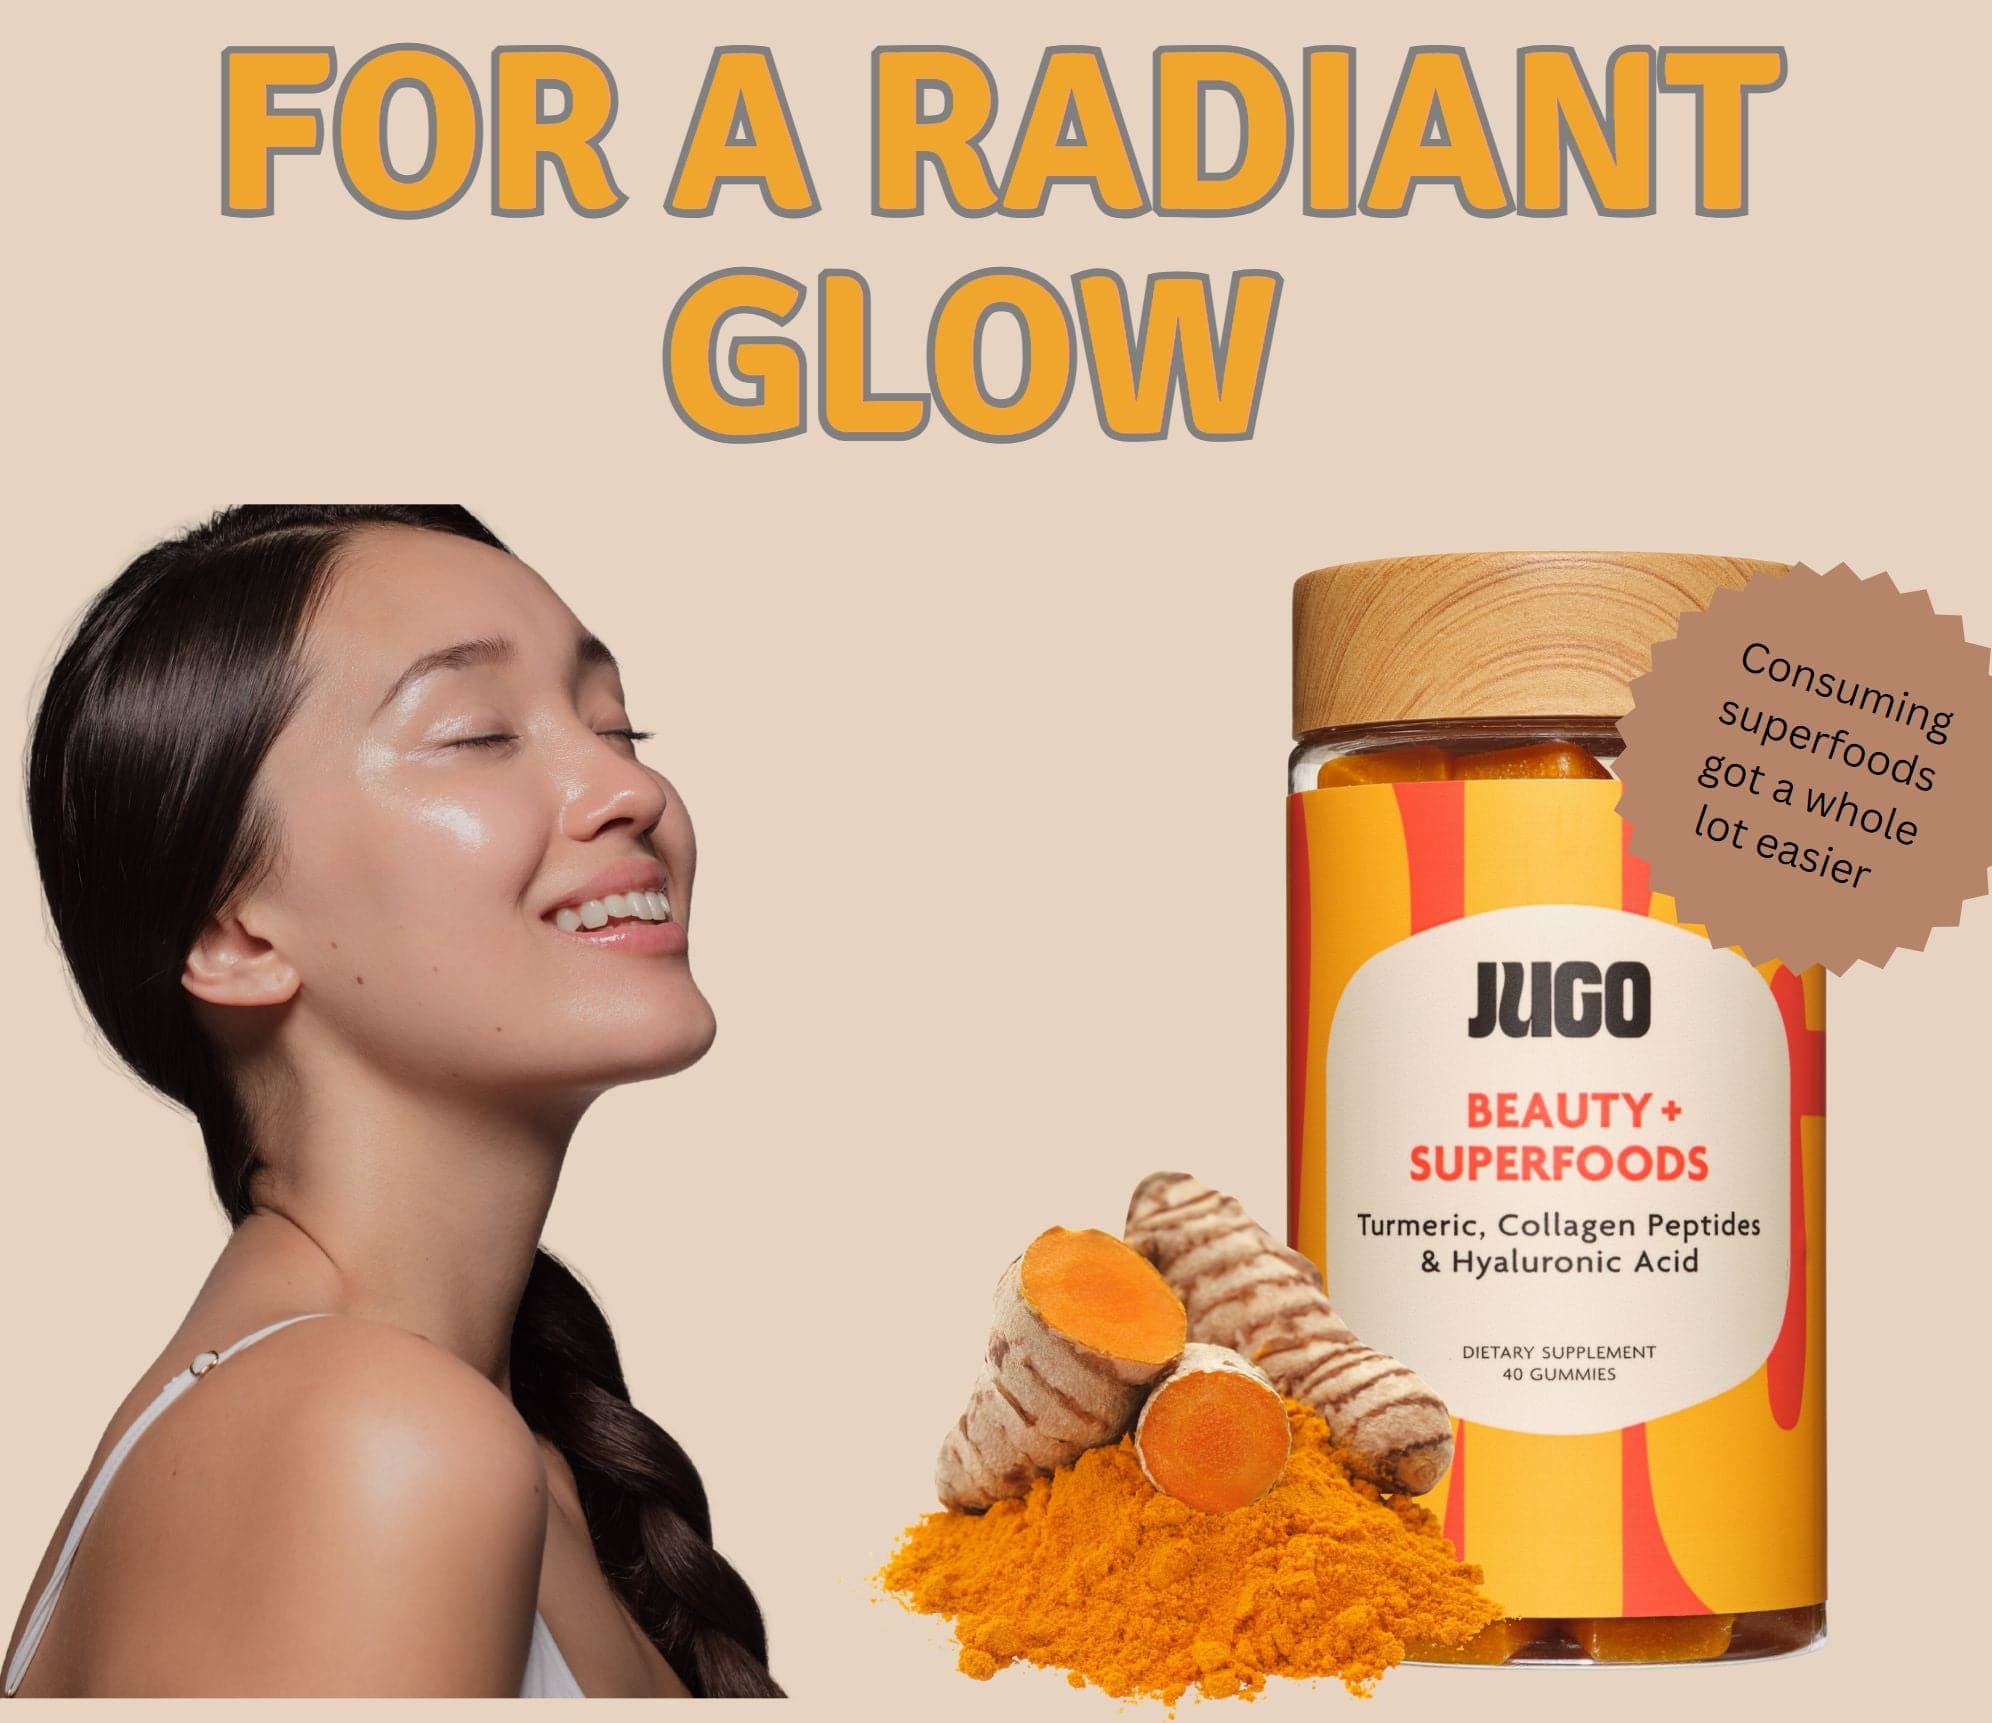 Beauty gummy bundle to help achieve glowing skin